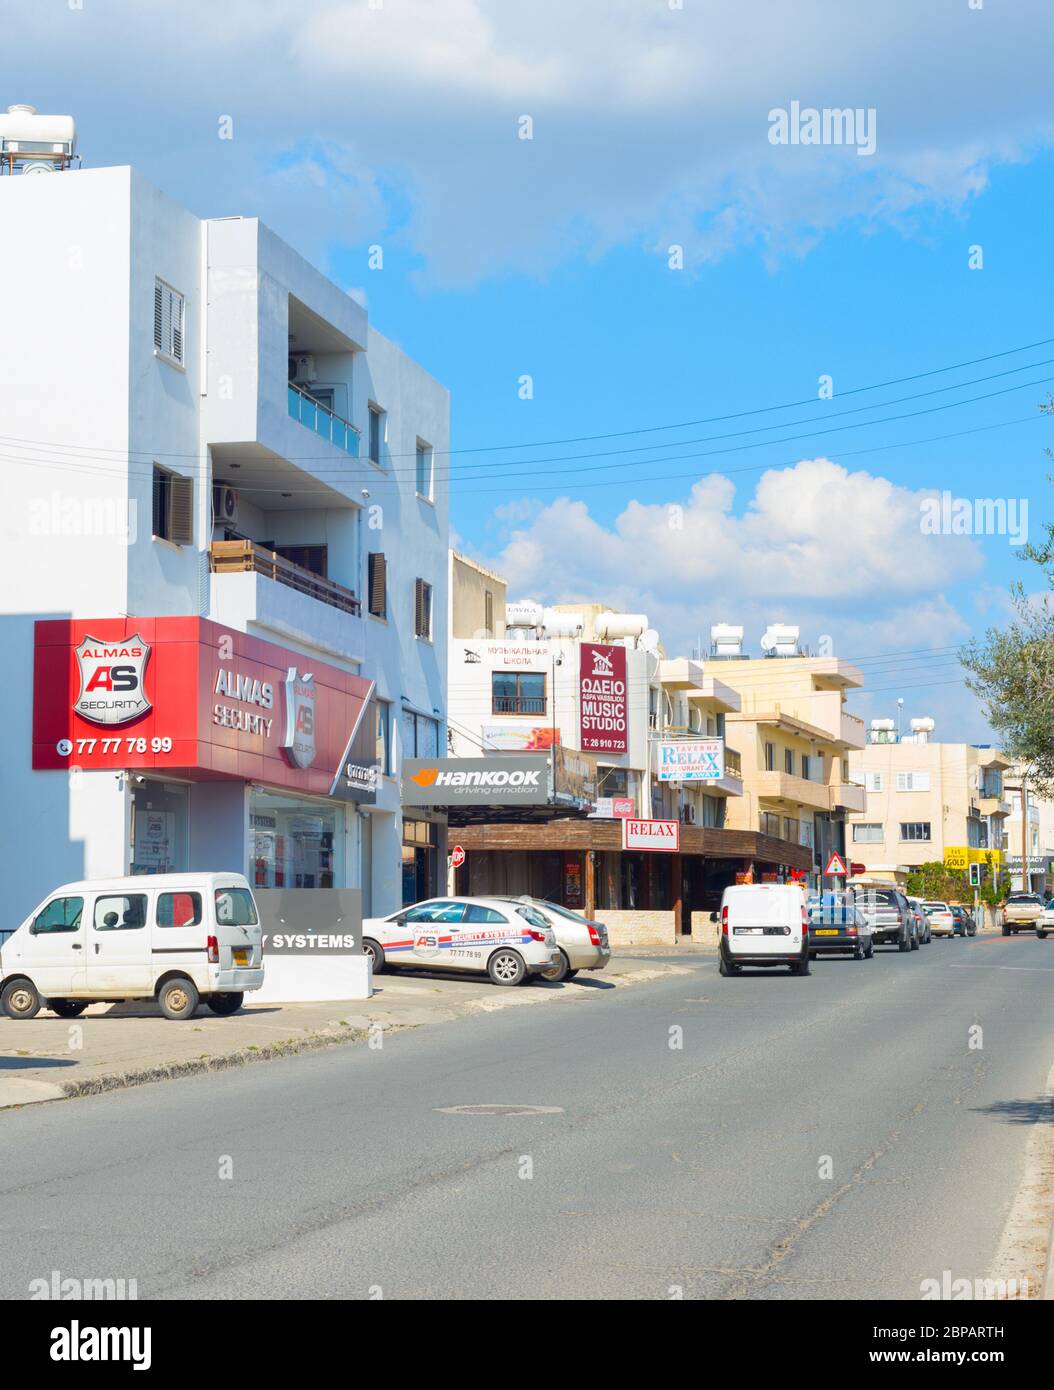 PAPHOS, Zypern - 13. FEBRUAR 2019: Straße und typische Wohnviertel von Paphos. Paphos ist die berühmteste Stadt Zyperns Stockfoto